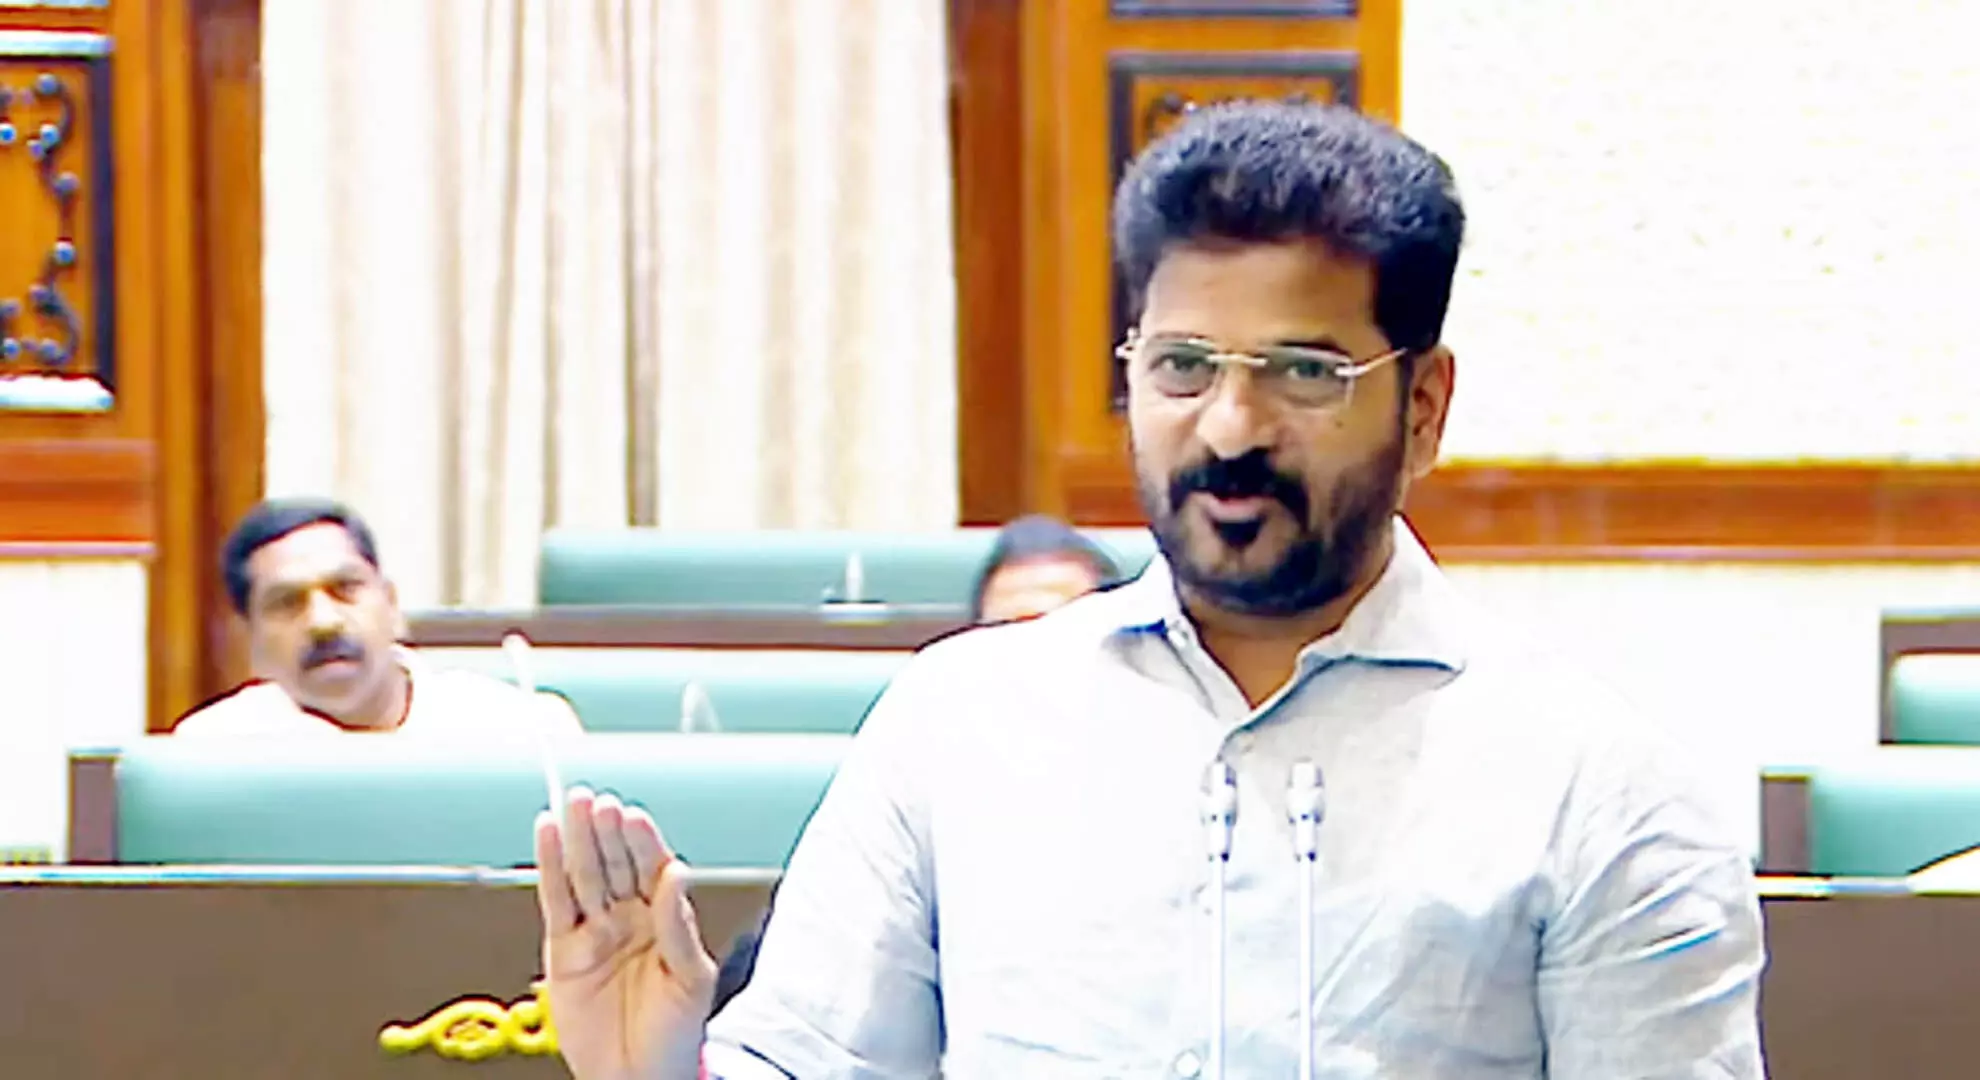 राष्ट्रीय राजनीति में तेलुगू लोगों की भूमिका कम हो रही है: सीएम रेवंत रेड्डी